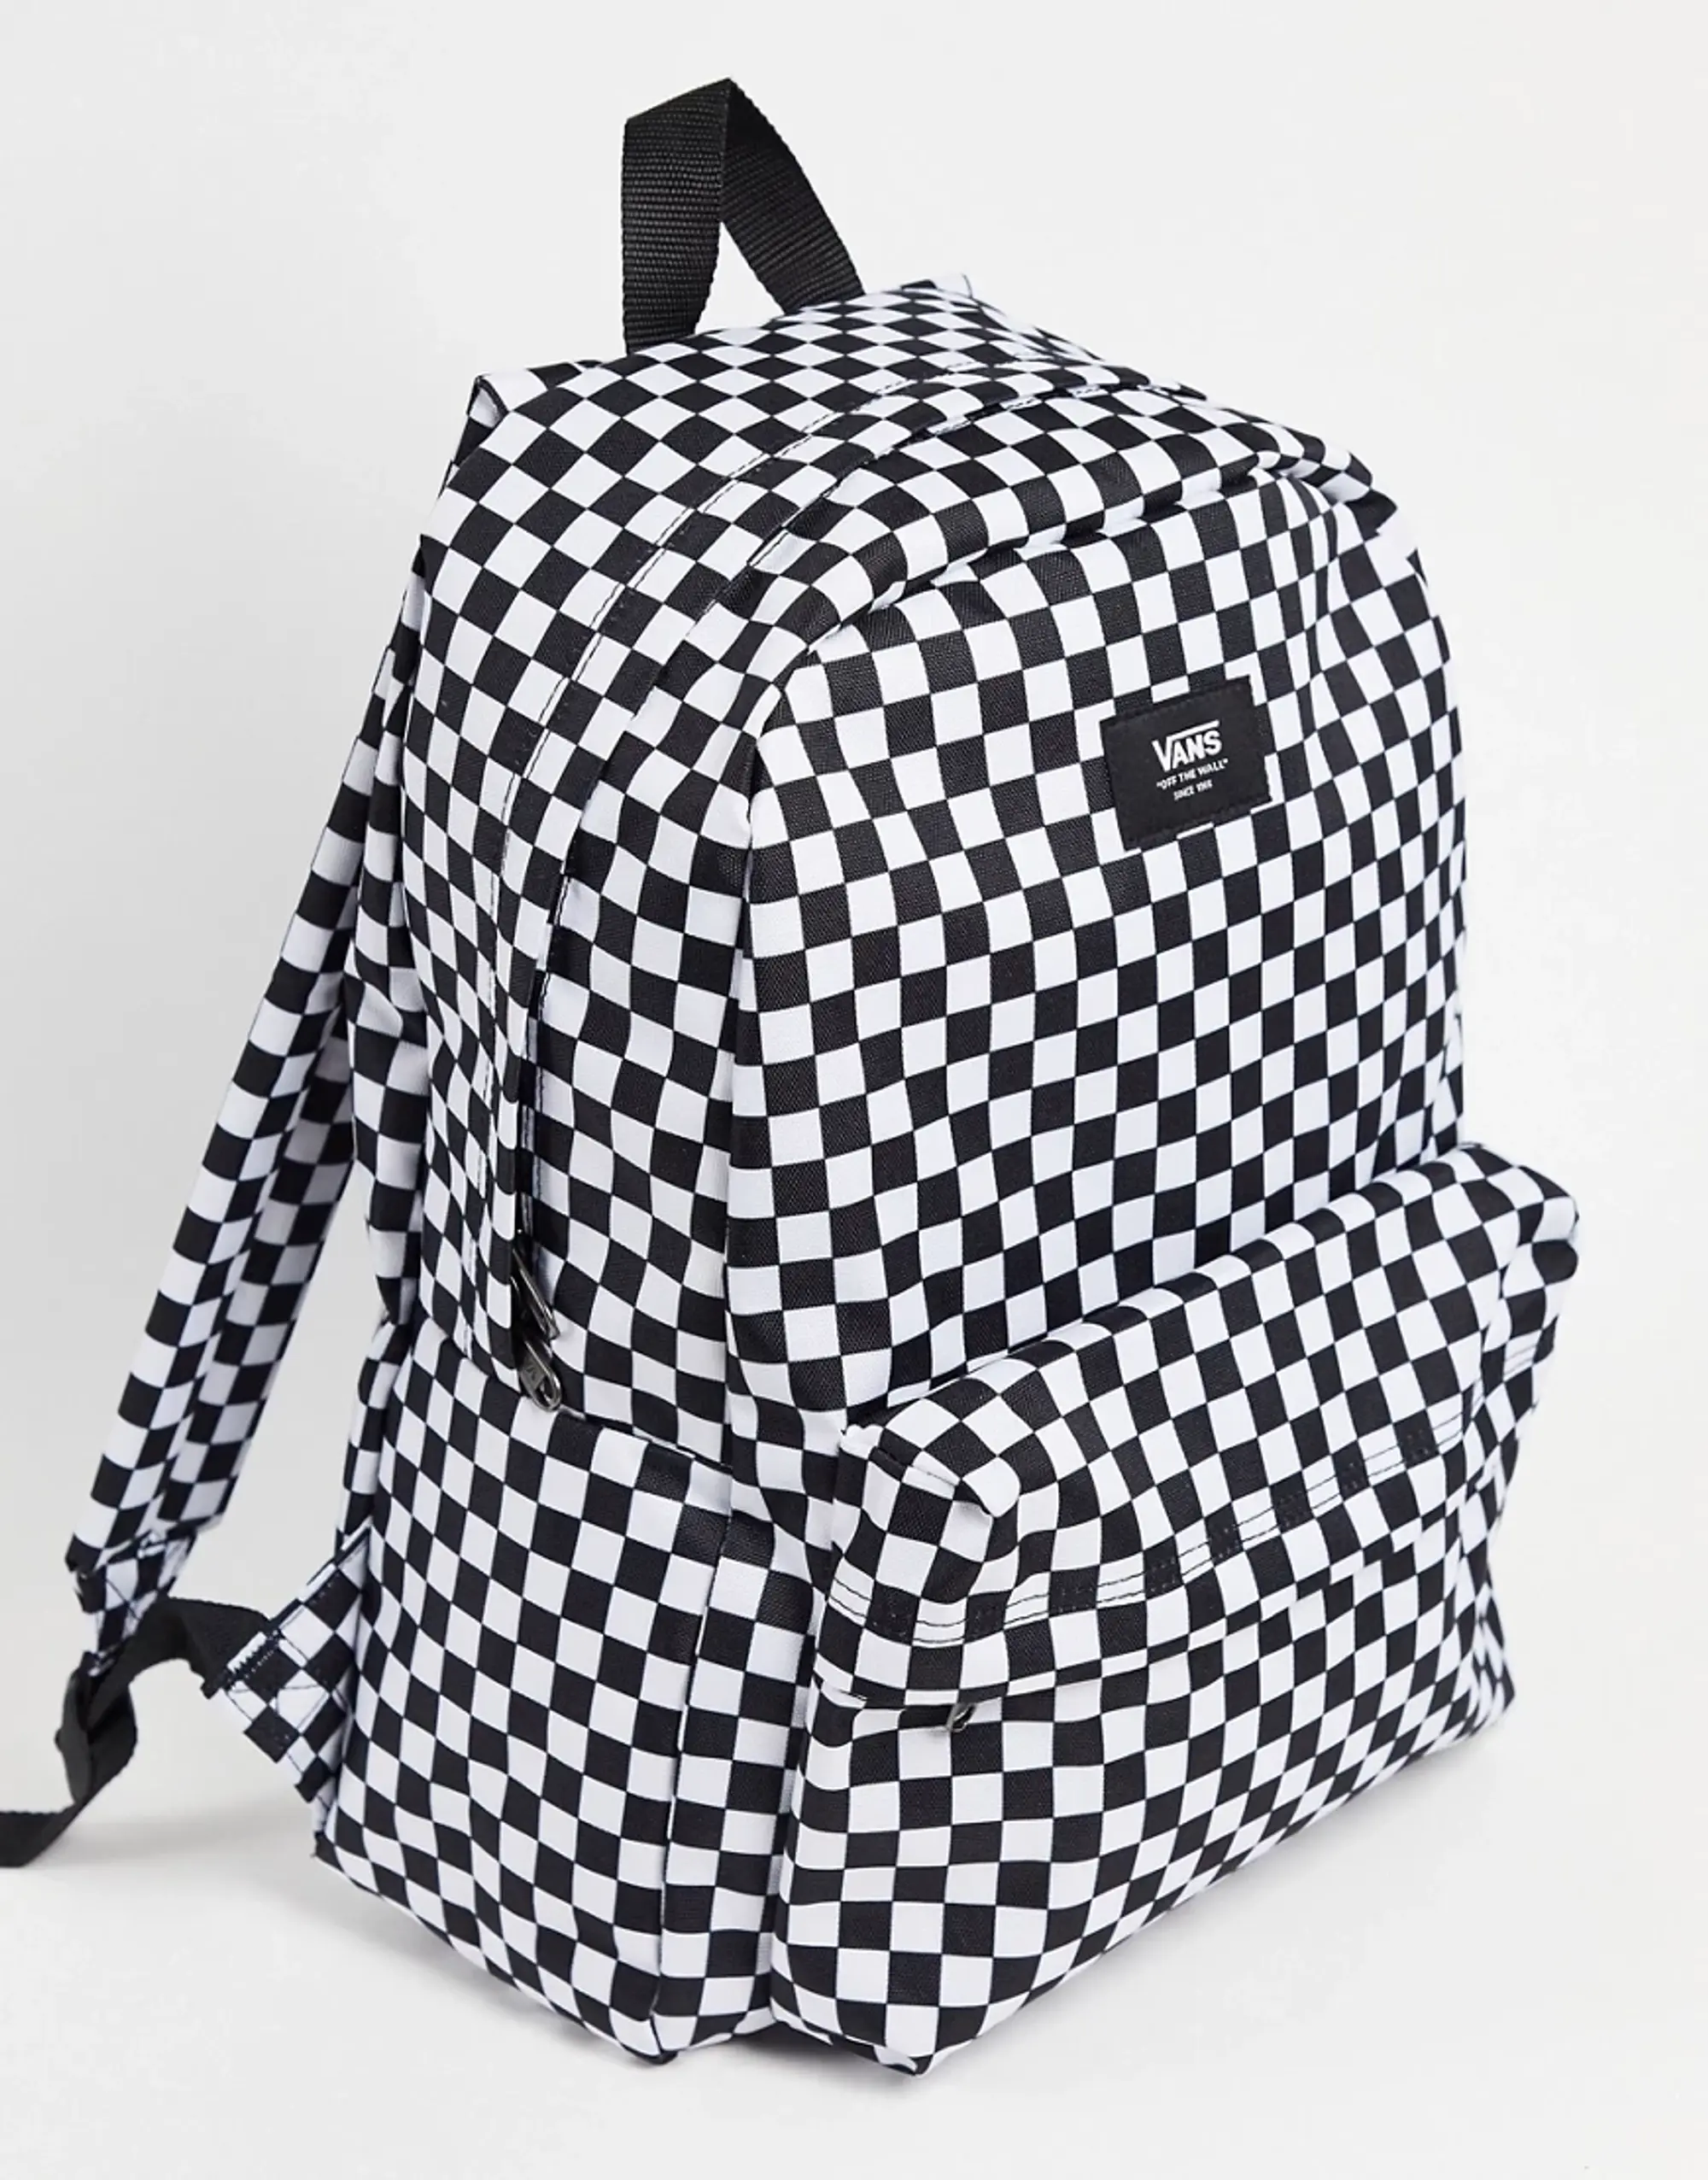 Vans Old Skool Backpack In Black And White Checkerboard